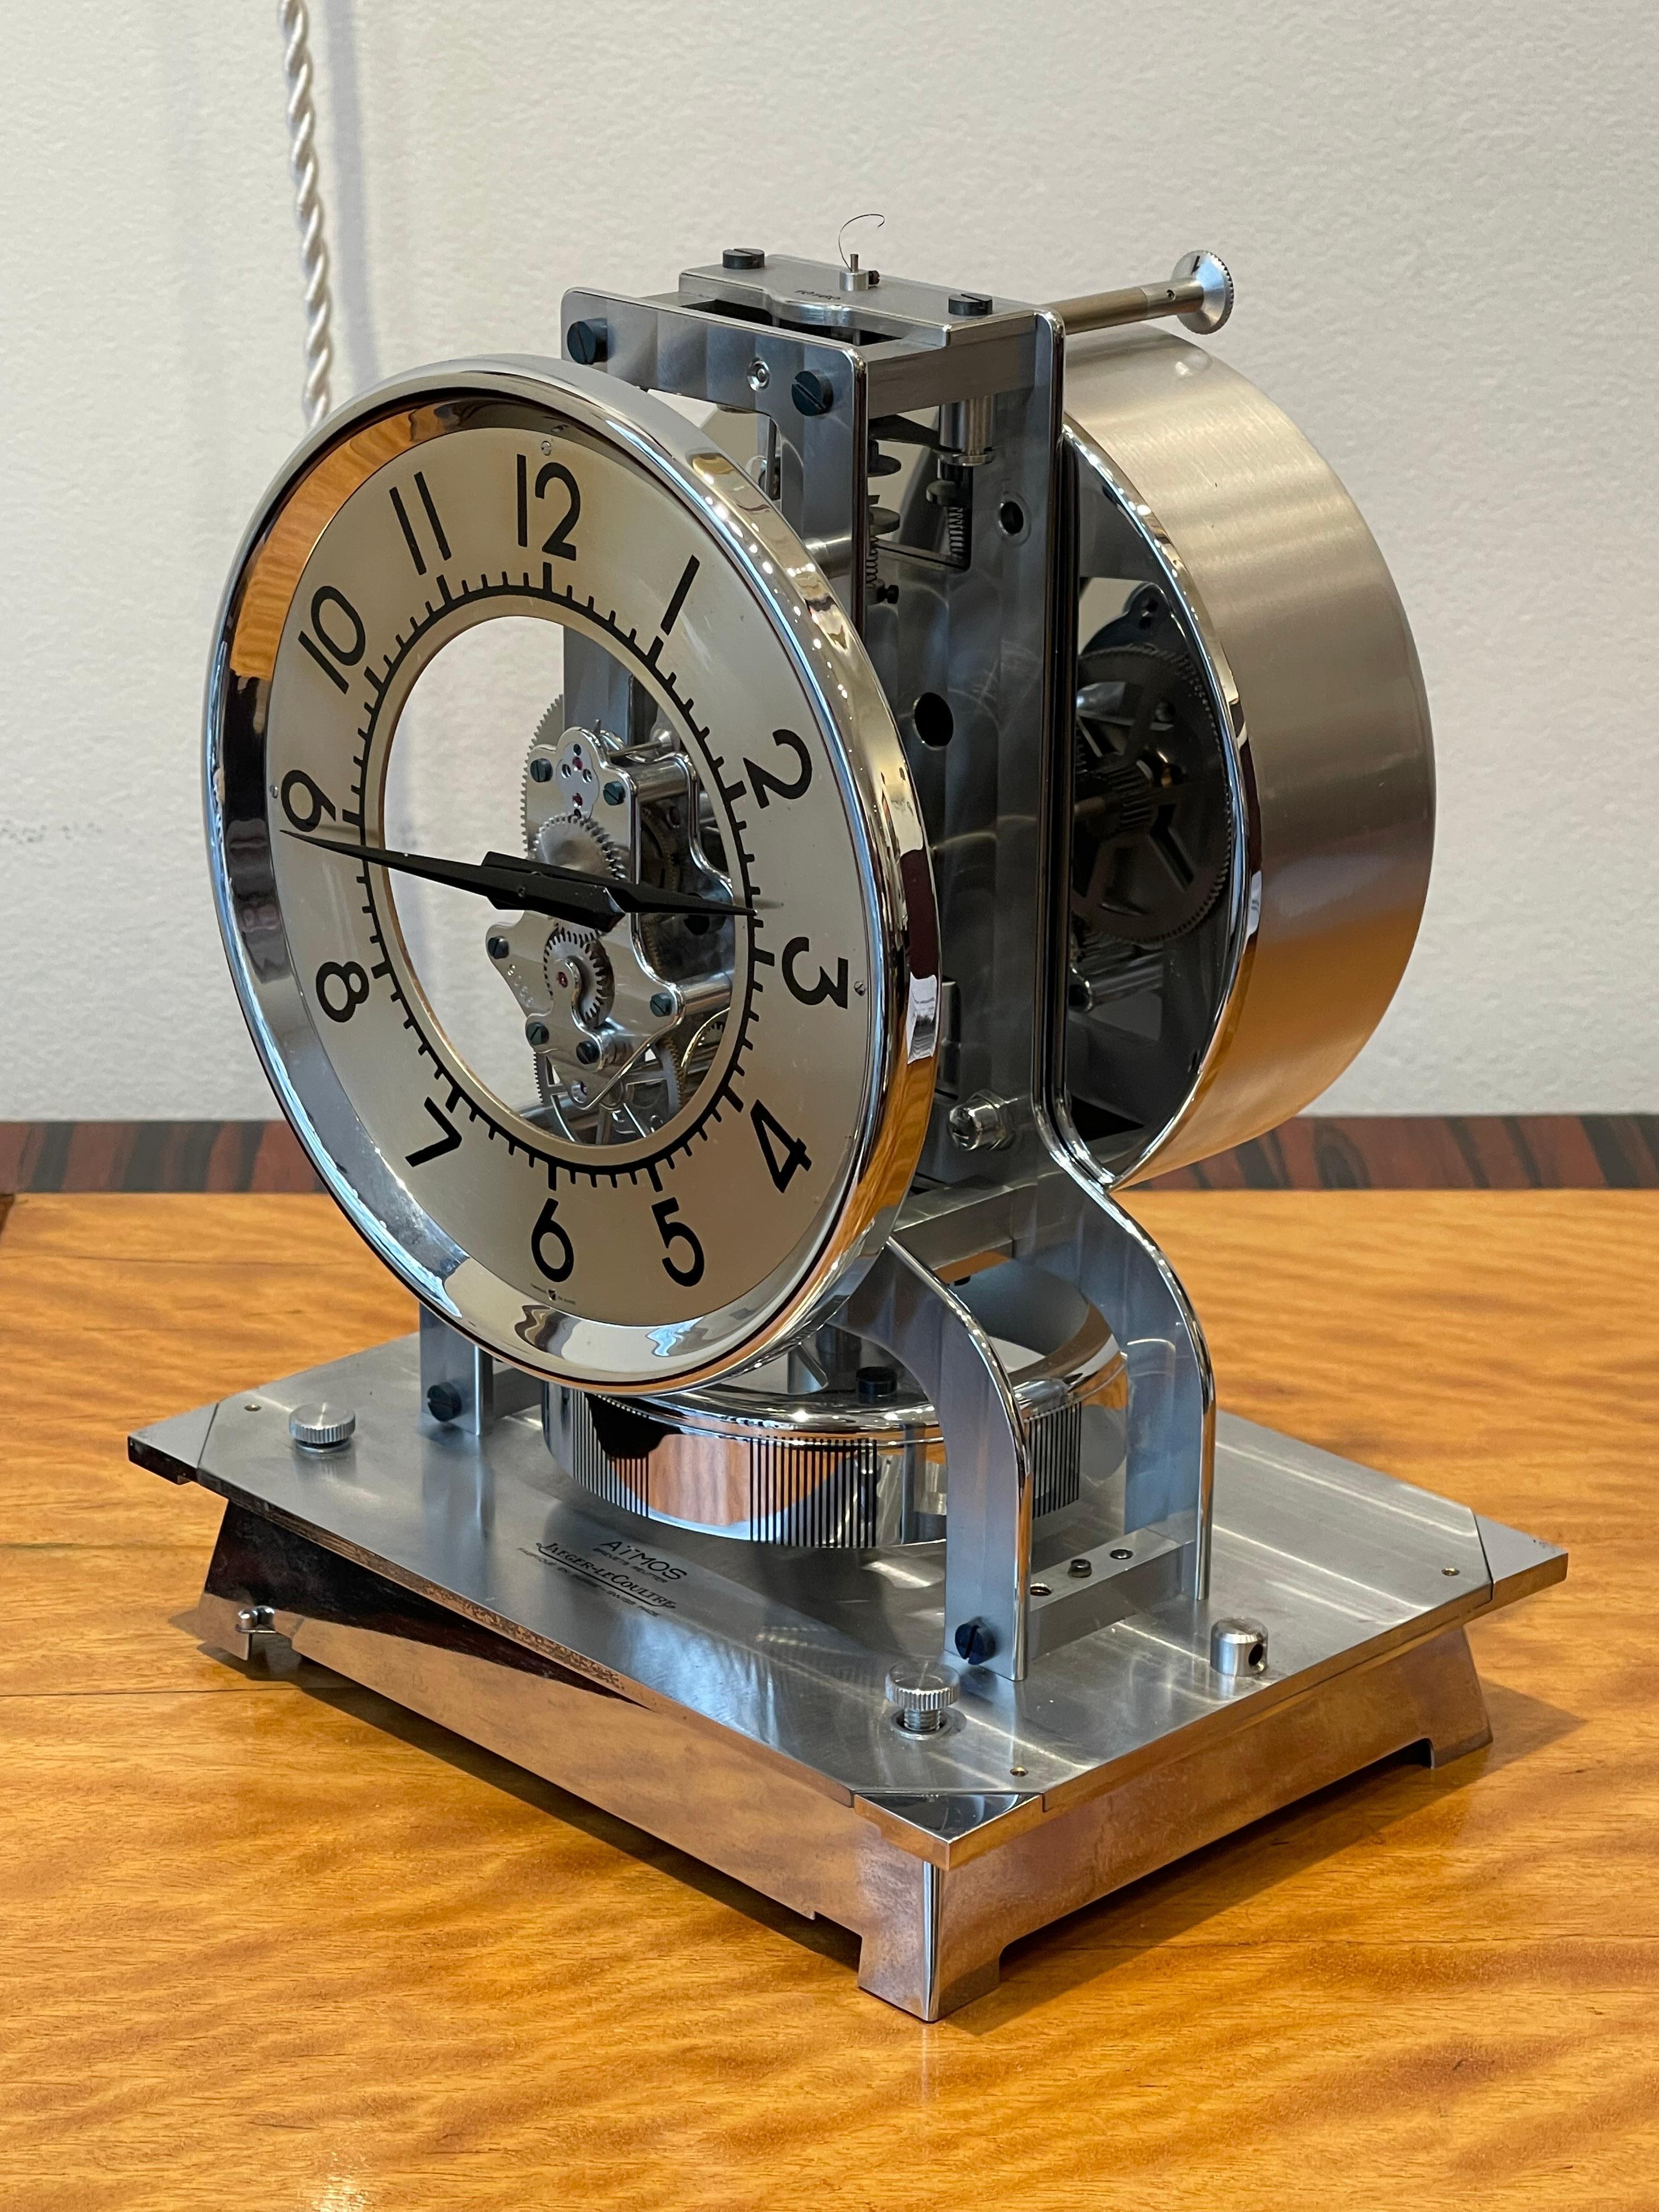 Exceptionnel  Horloge de table Atmos de Jaeger-LeCoultre, vers 1940, Suisse

Horloge de table éternelle en métal chromé. L'horloge repose sur une base en métal chromé, recouverte d'un cube en bois. Le cadran est creux au centre, avec un mécanisme